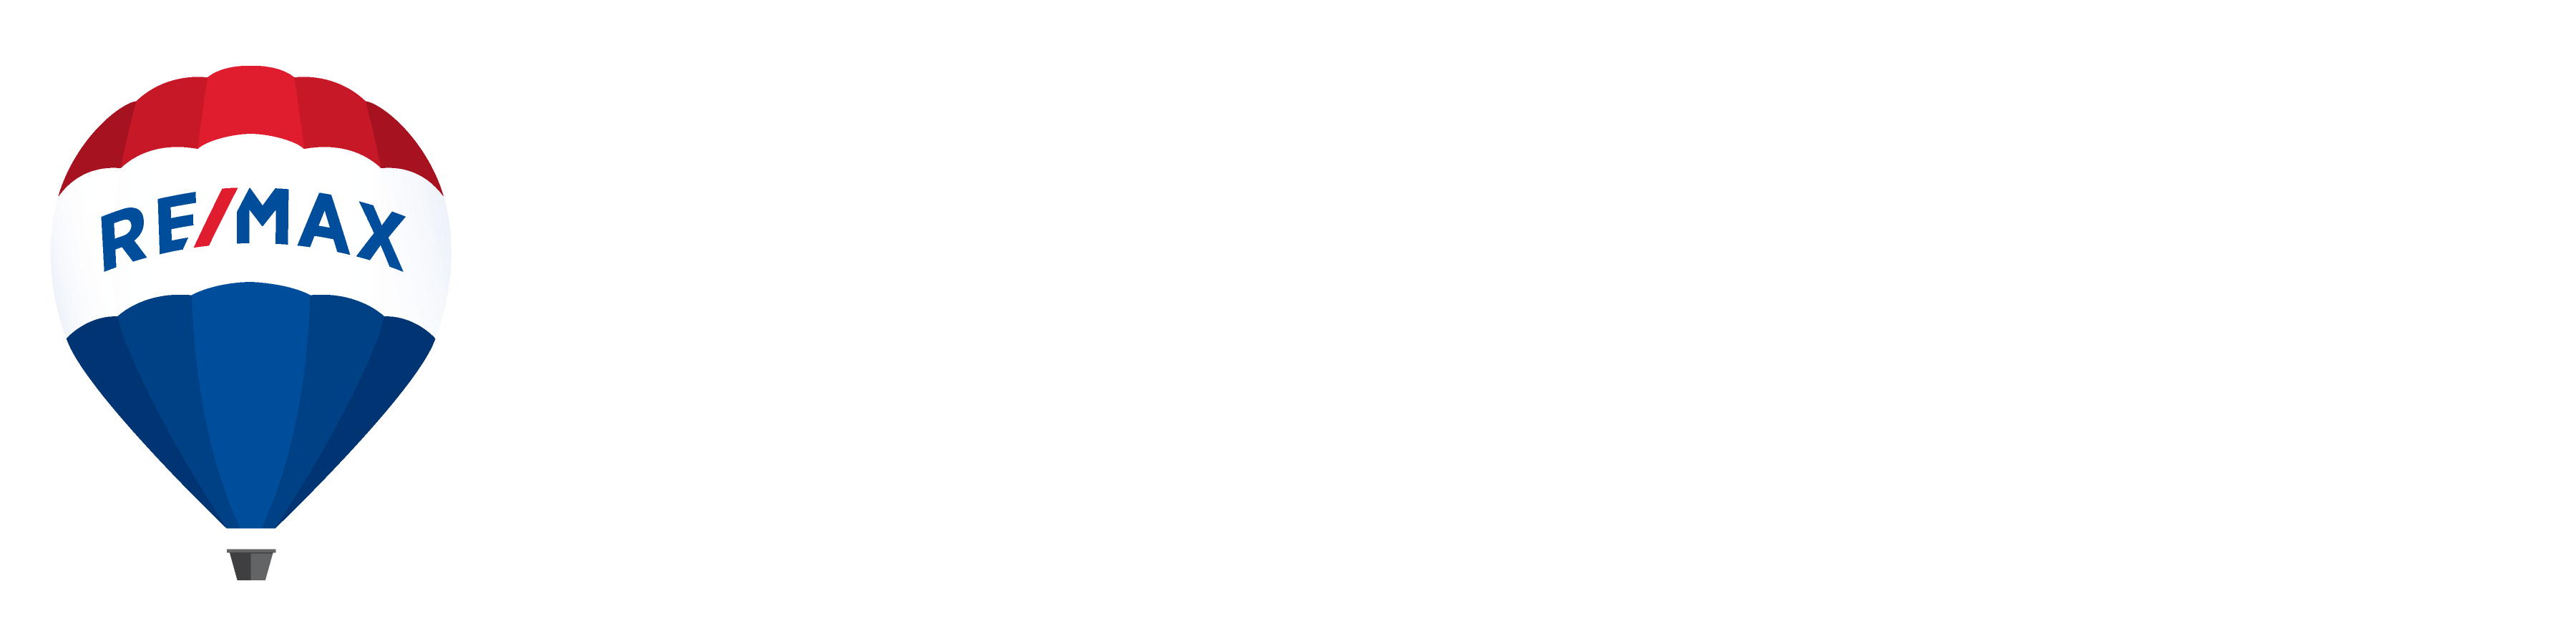 RE/MAX Capitale | RE/MAX Référence 2000